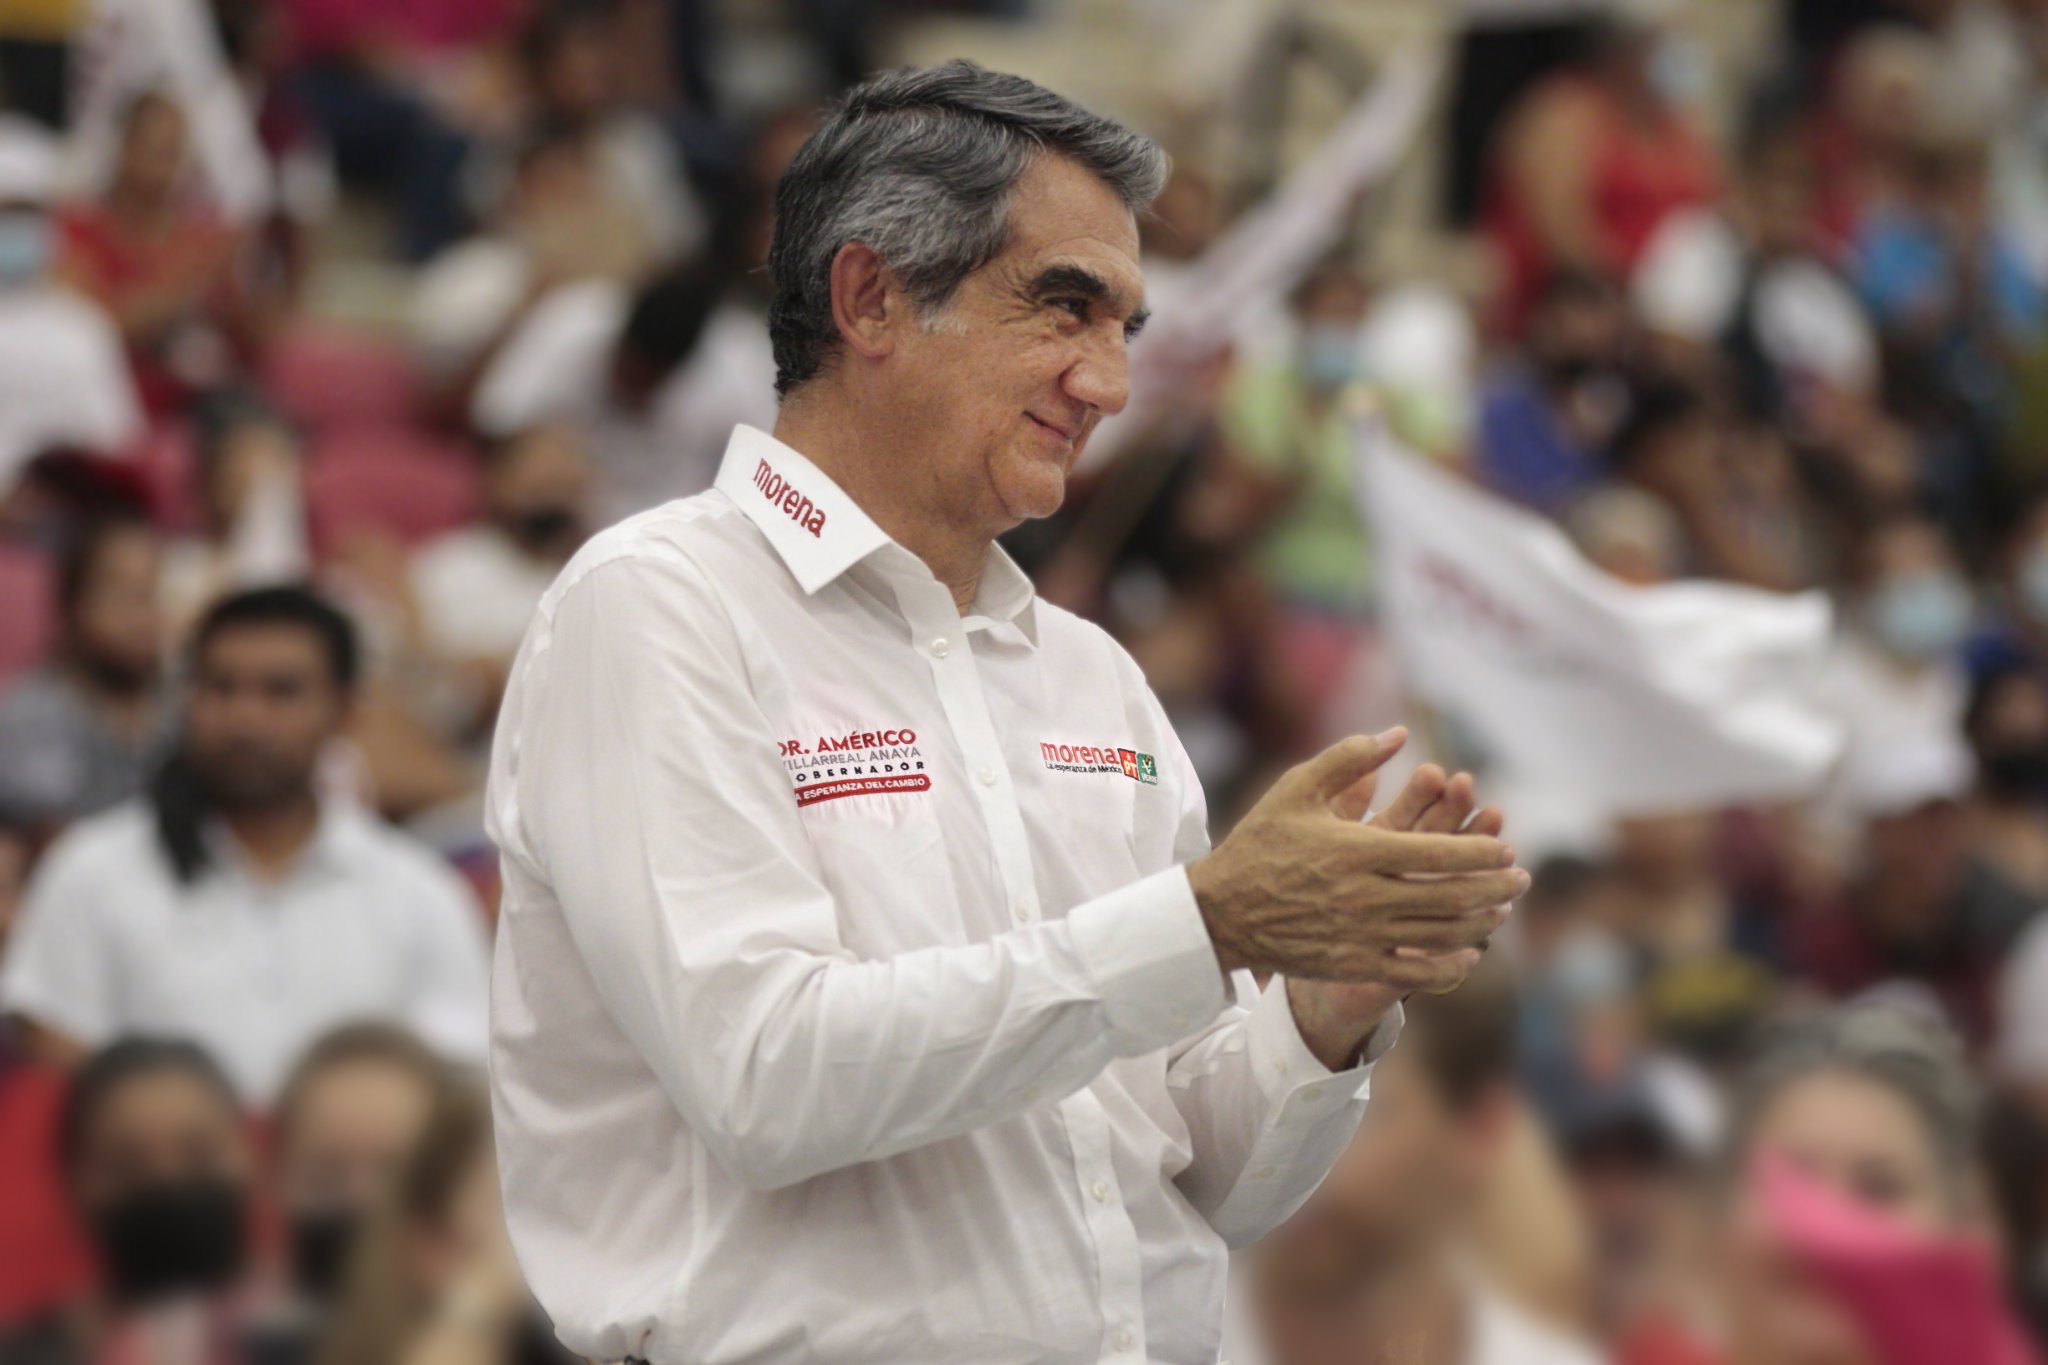 PAN rechazó el triunfo de Américo Villarreal: “Morena es capaz de todo”